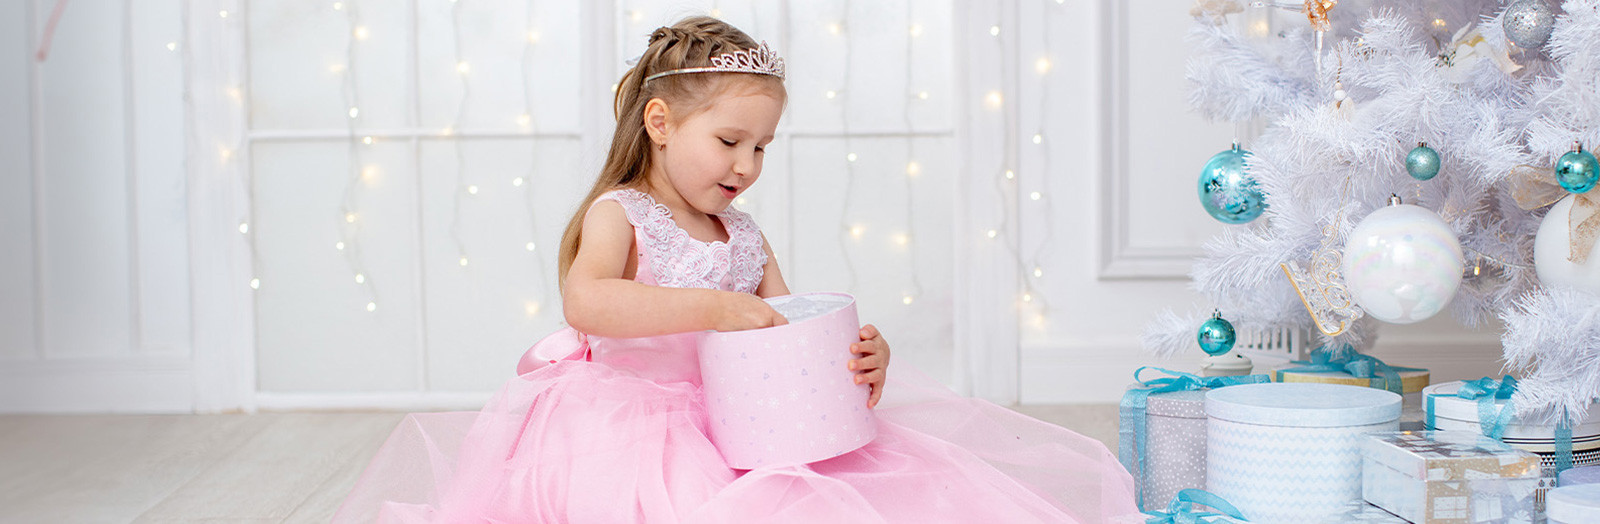 Disney princesses - raiponce - deguisement deluxe taille 3-4 ans, fetes et  anniversaires